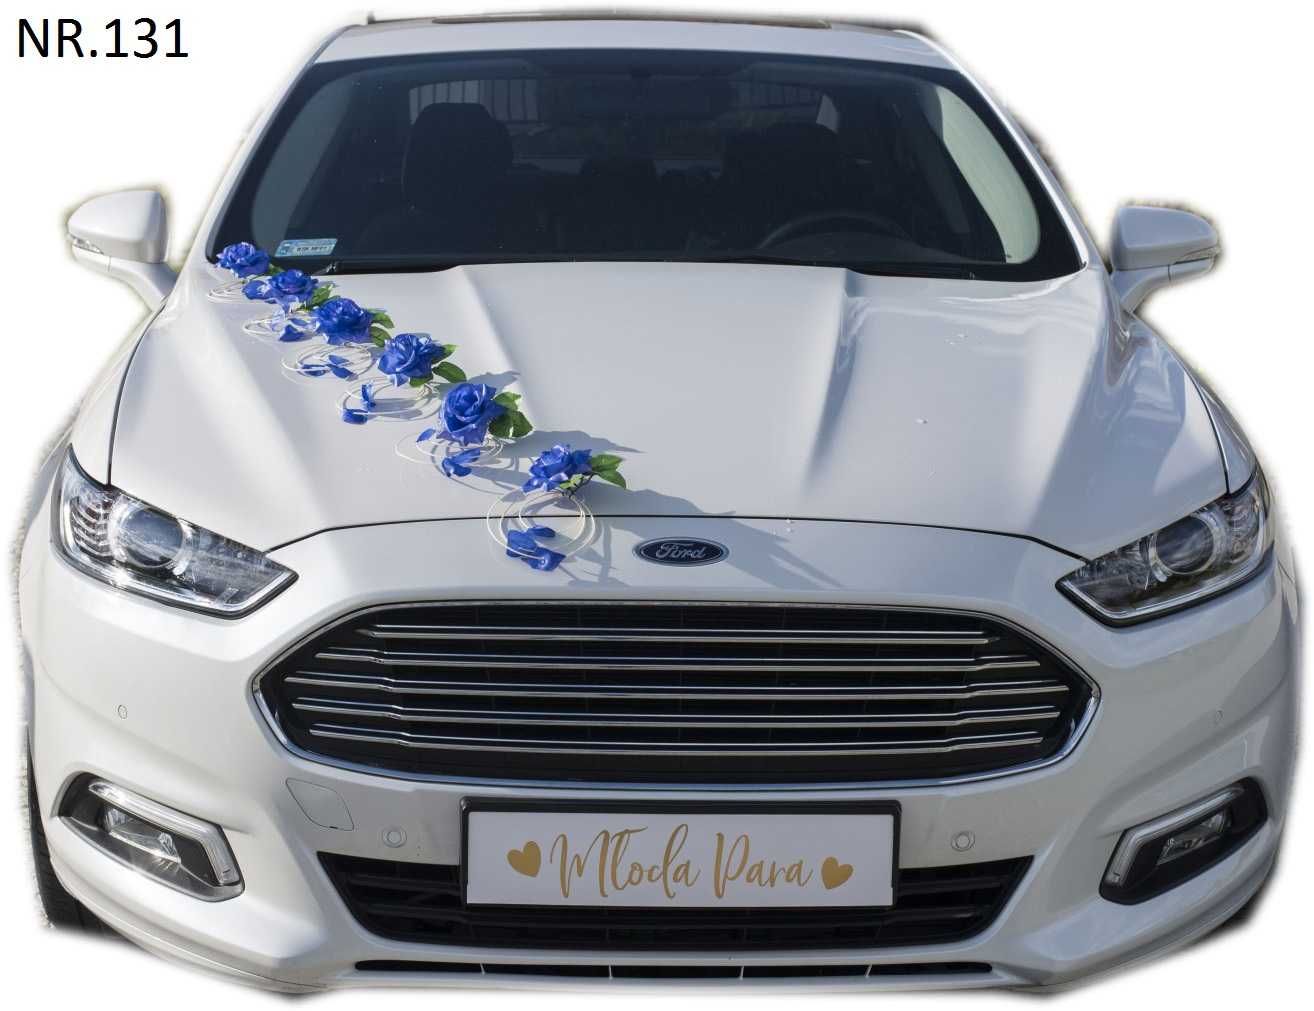 Nie zostawi Cie - NOWA chabrowa dekoracja na auto do ślubu 131